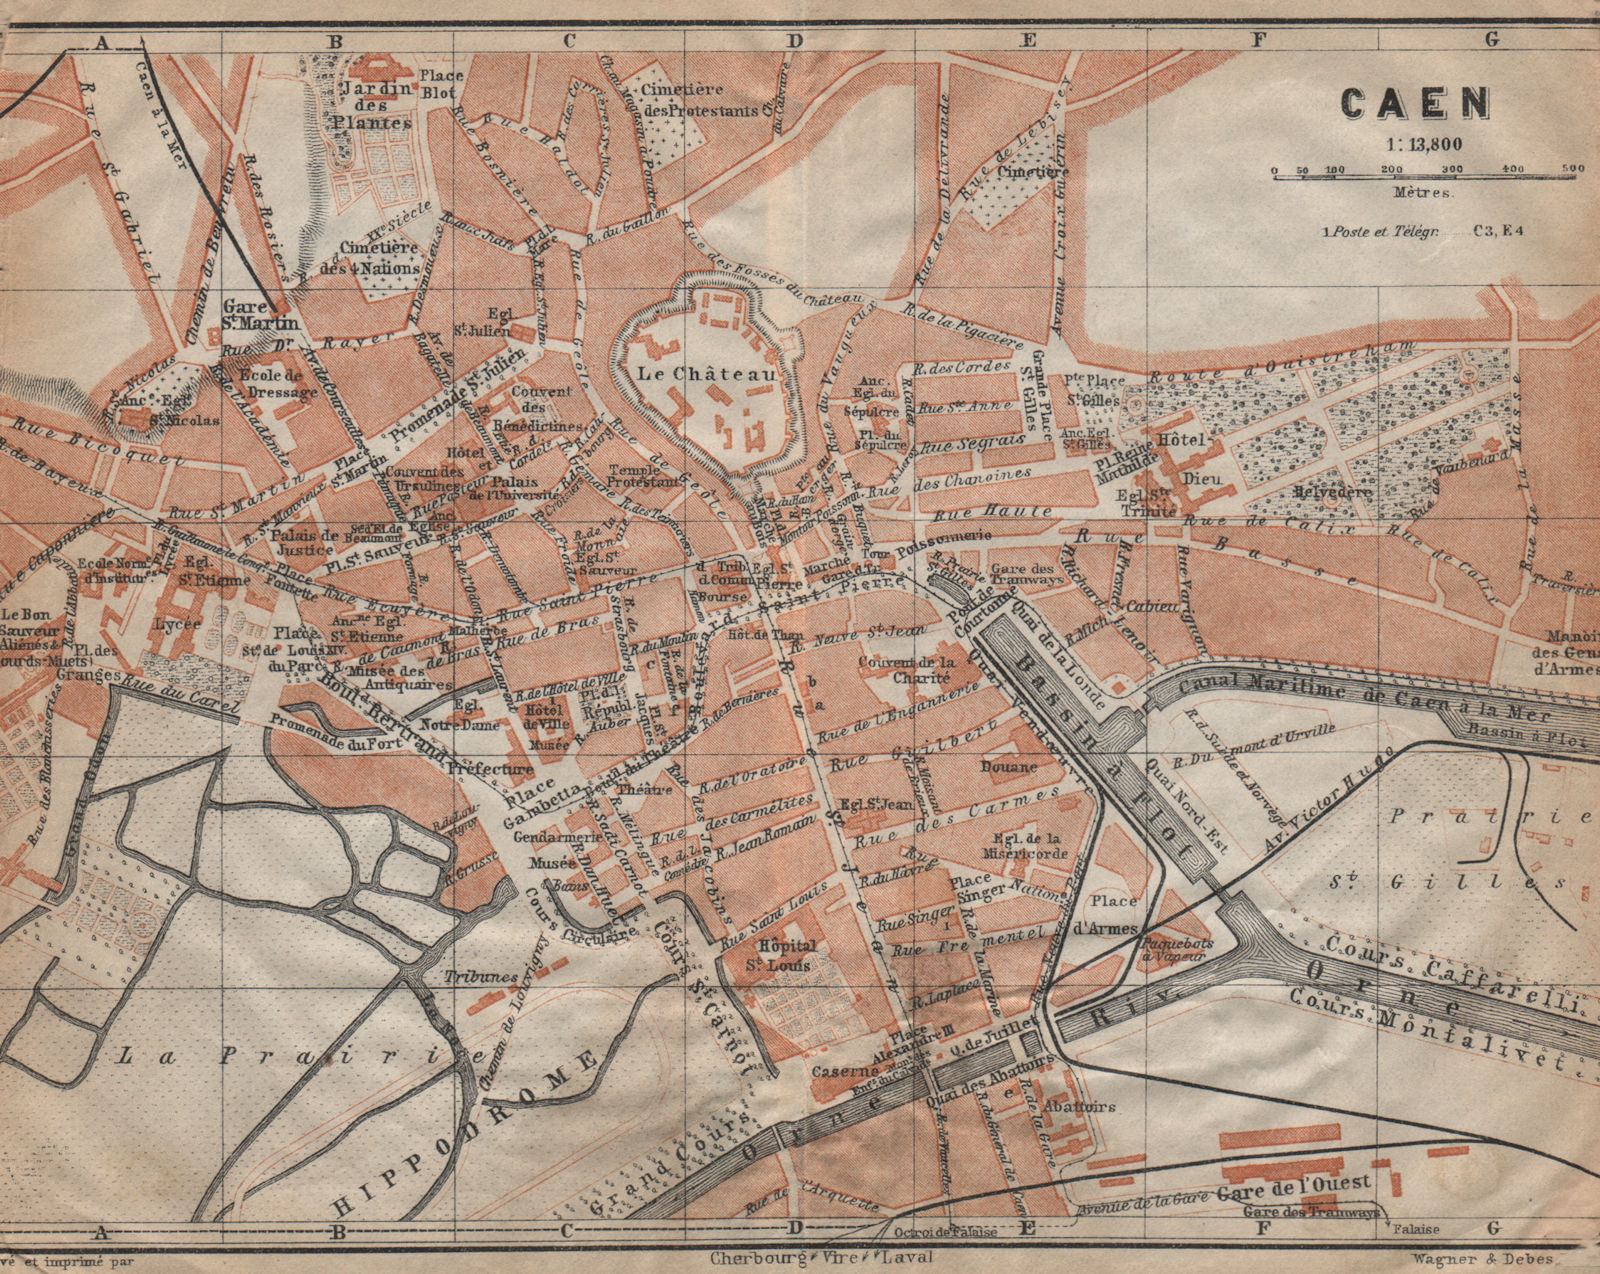 Associate Product CAEN antique town city plan de la ville. Calvados carte. BAEDEKER 1909 old map